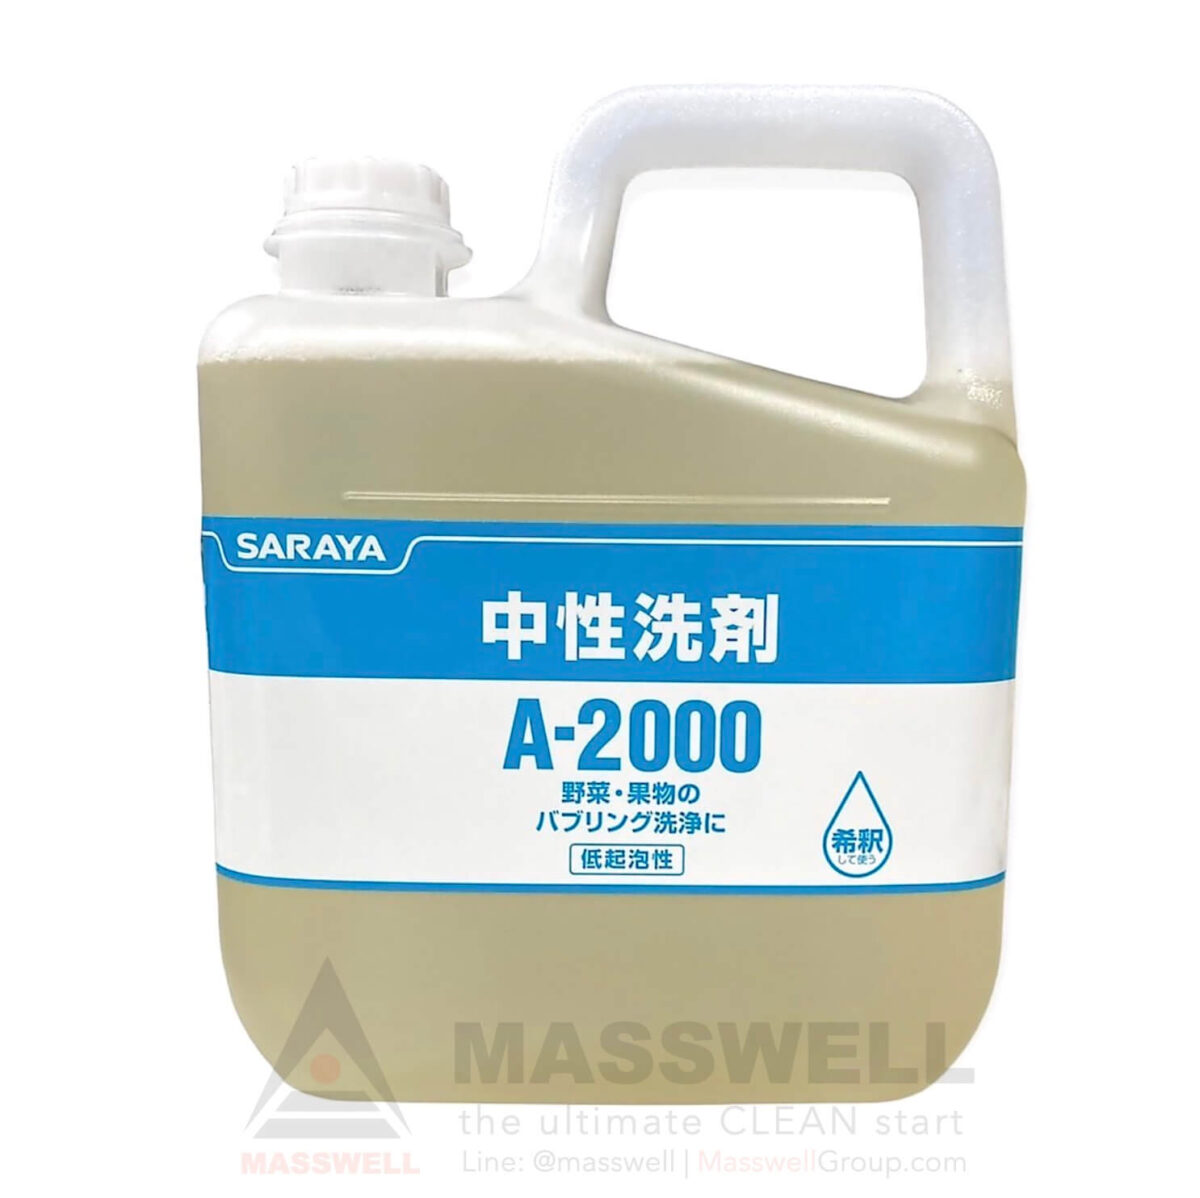 SARAYA ผลิตภัณฑ์ทำความสะอาดค่าเป็นกลาง A-2000 5 kg